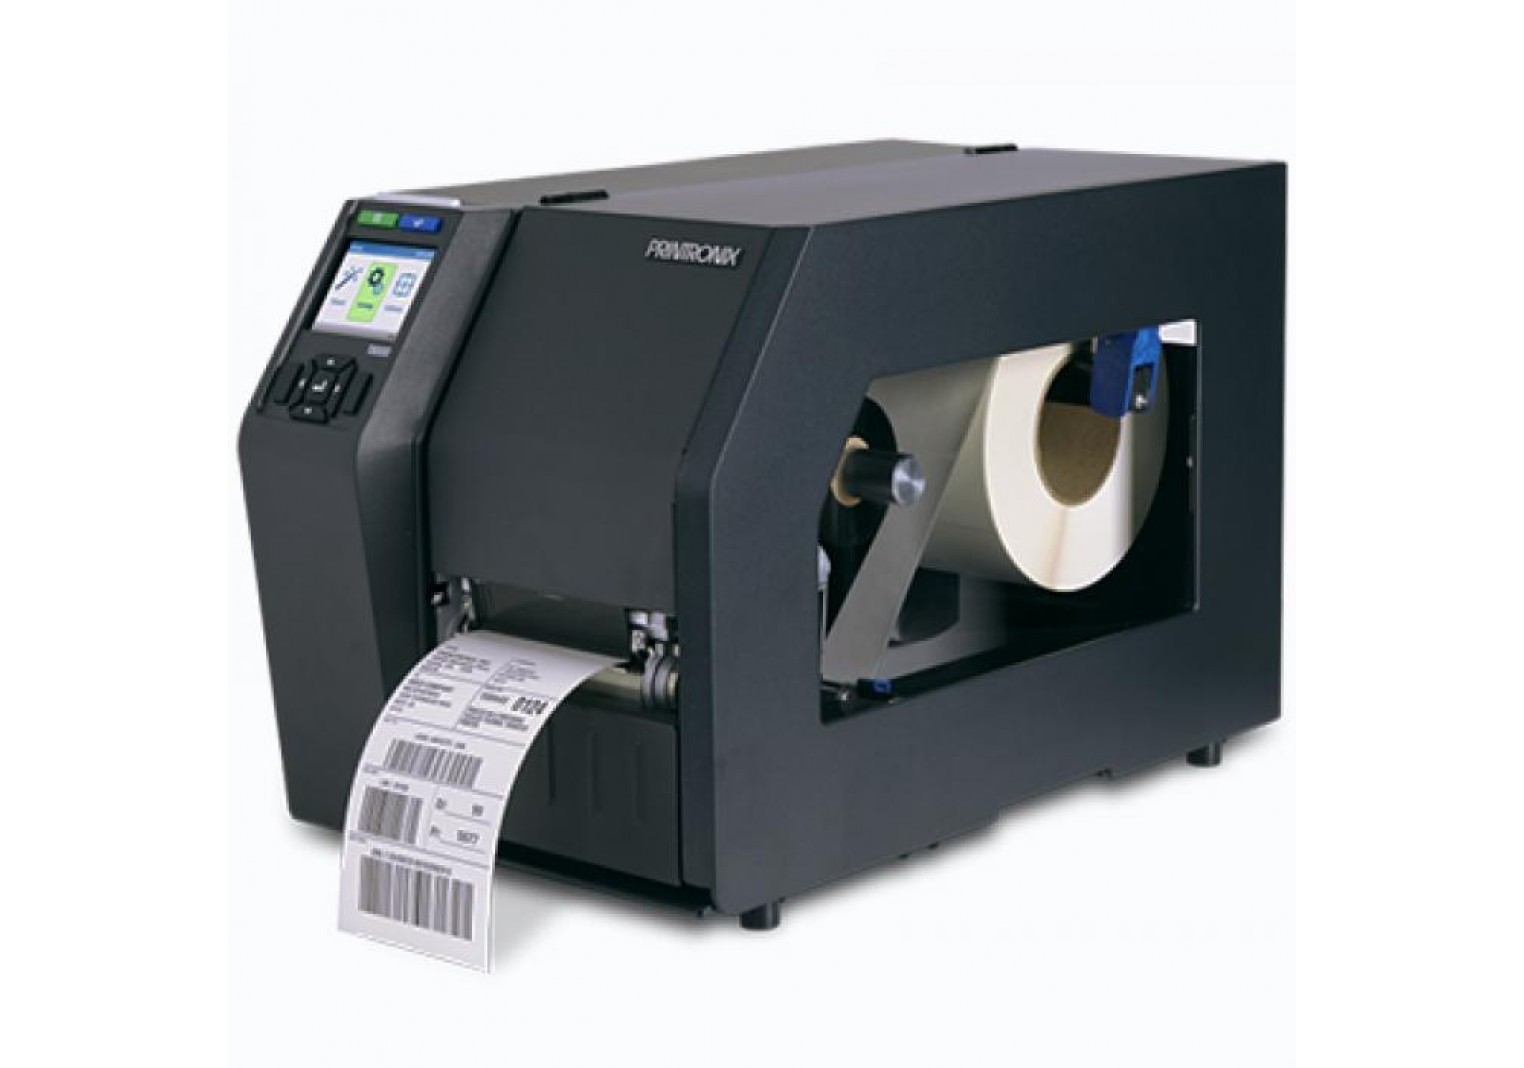 เครื่องพิมพ์บาร์โค้ด Printronix T8000